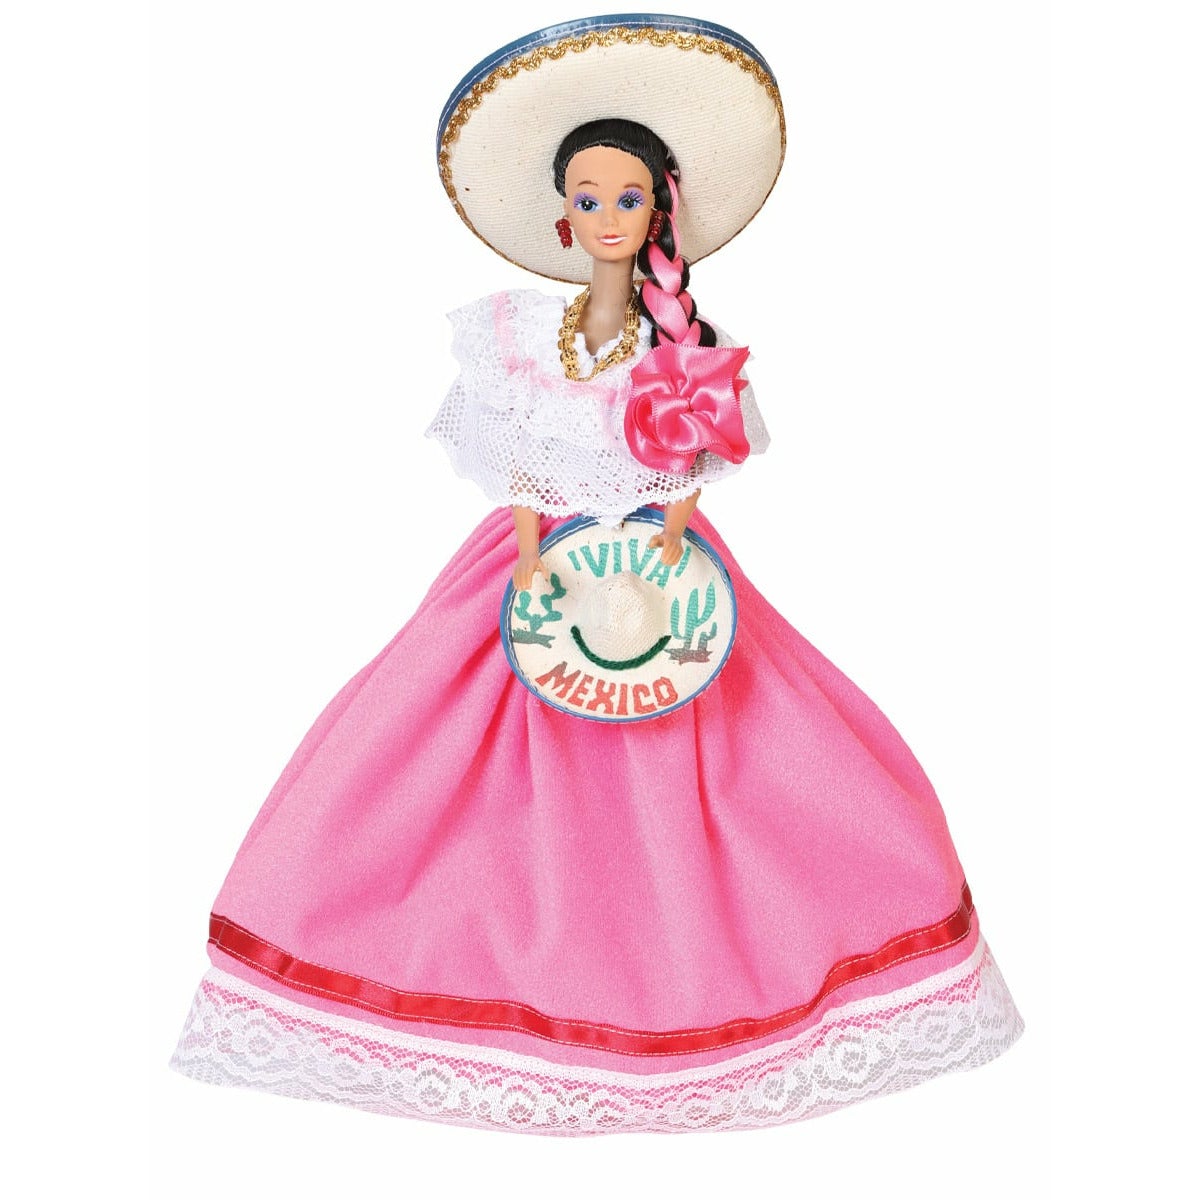 Mexican Dolls - CharroAzteca.com